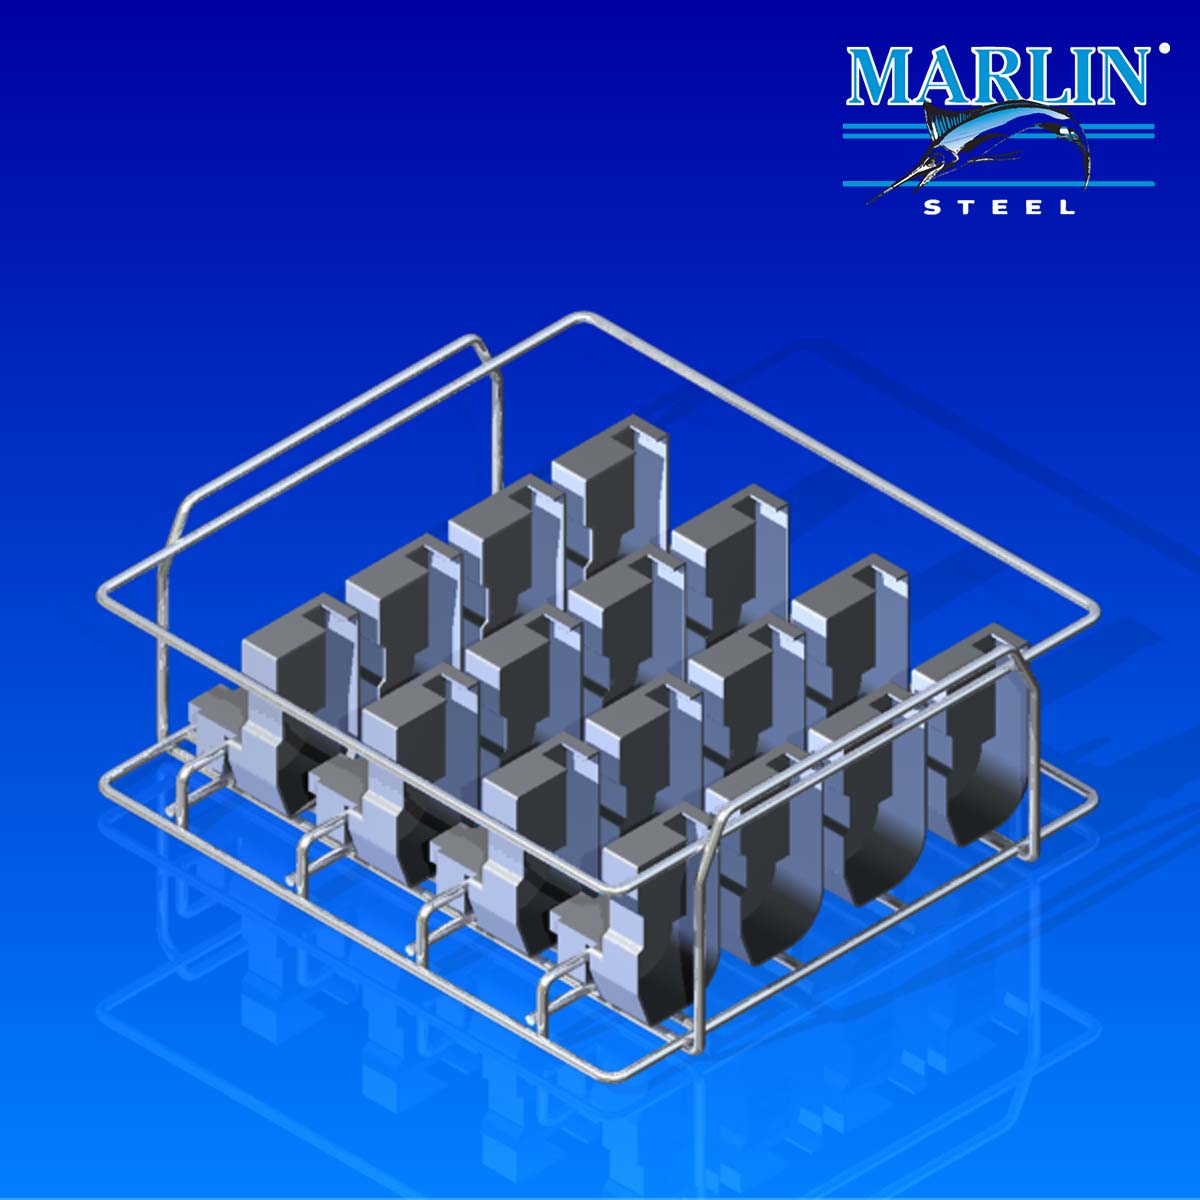 Marlin Steel Material Handling Basket 903001 